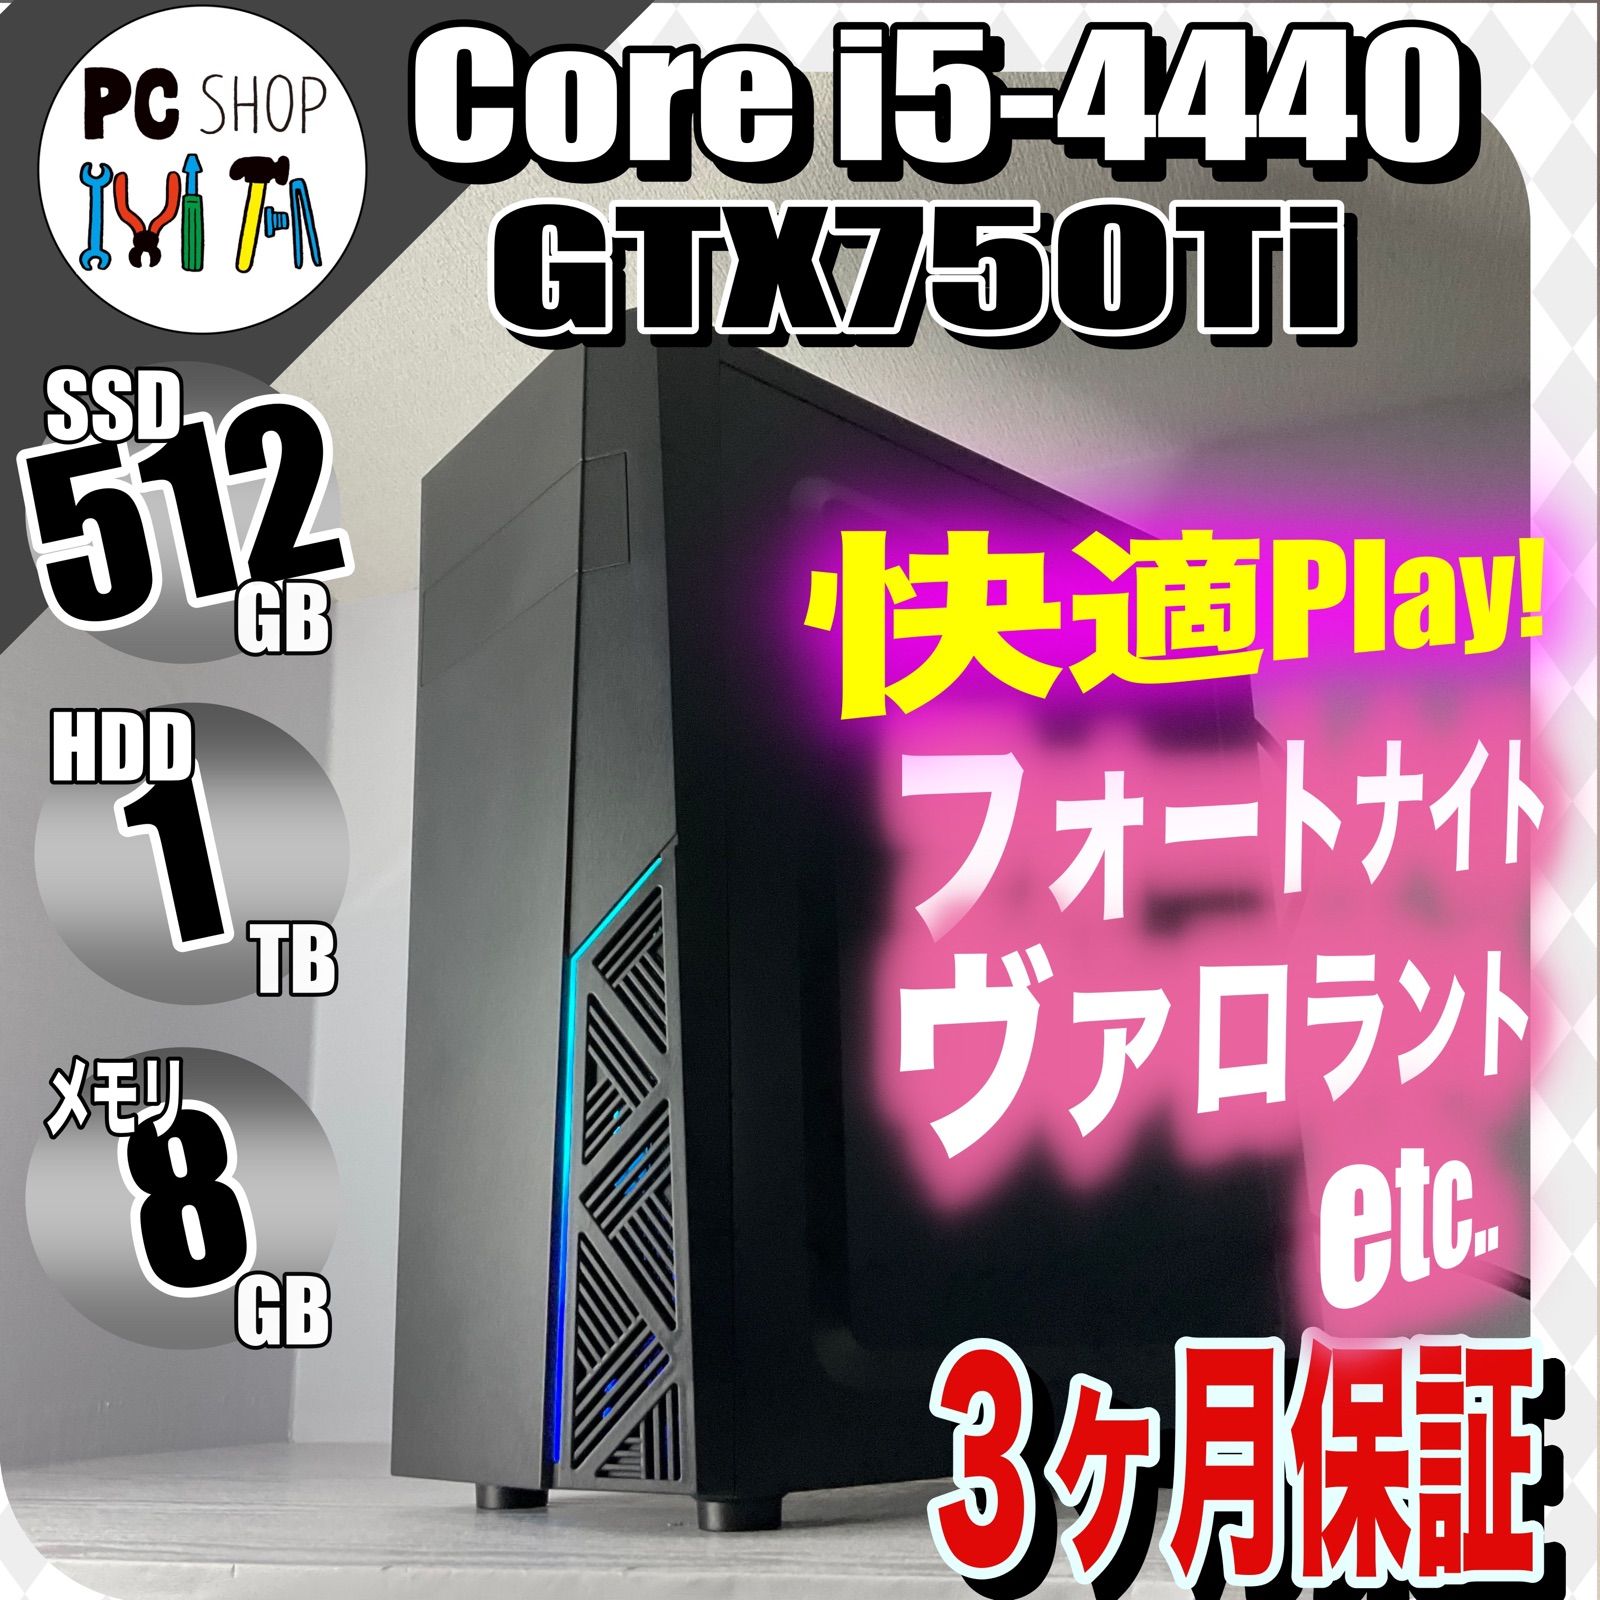 【小型高性能ゲーミングPC】Core i5 GTX750Ti 8GB SSD搭載